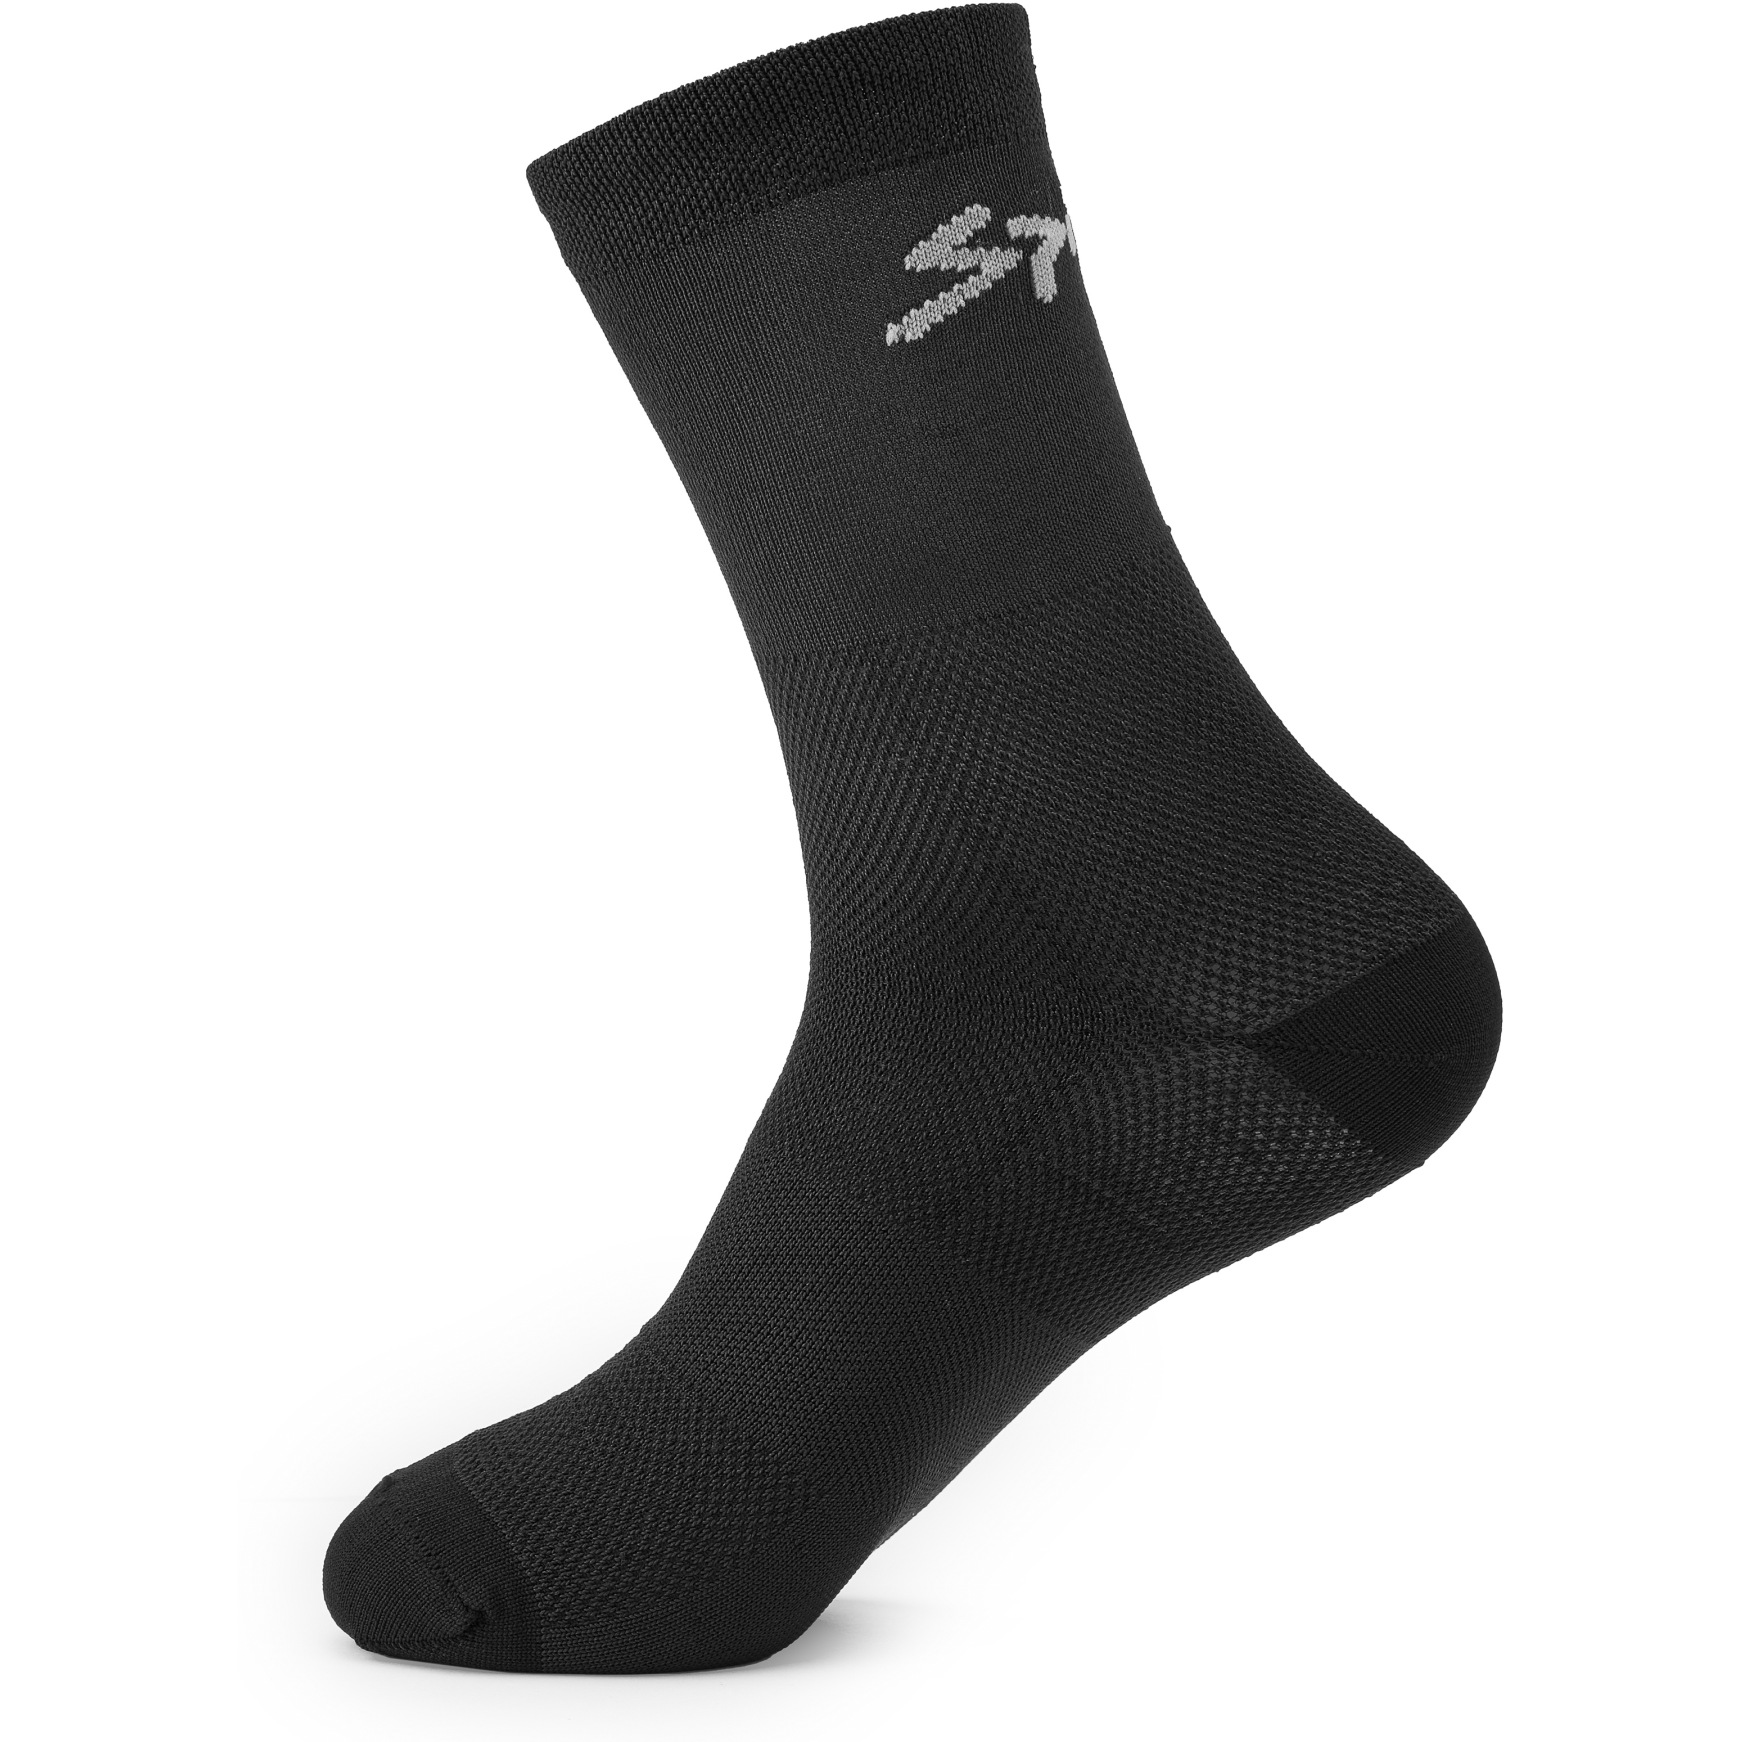 Produktbild von Spiuk ANATOMIC Socken 2er Pack - schwarz